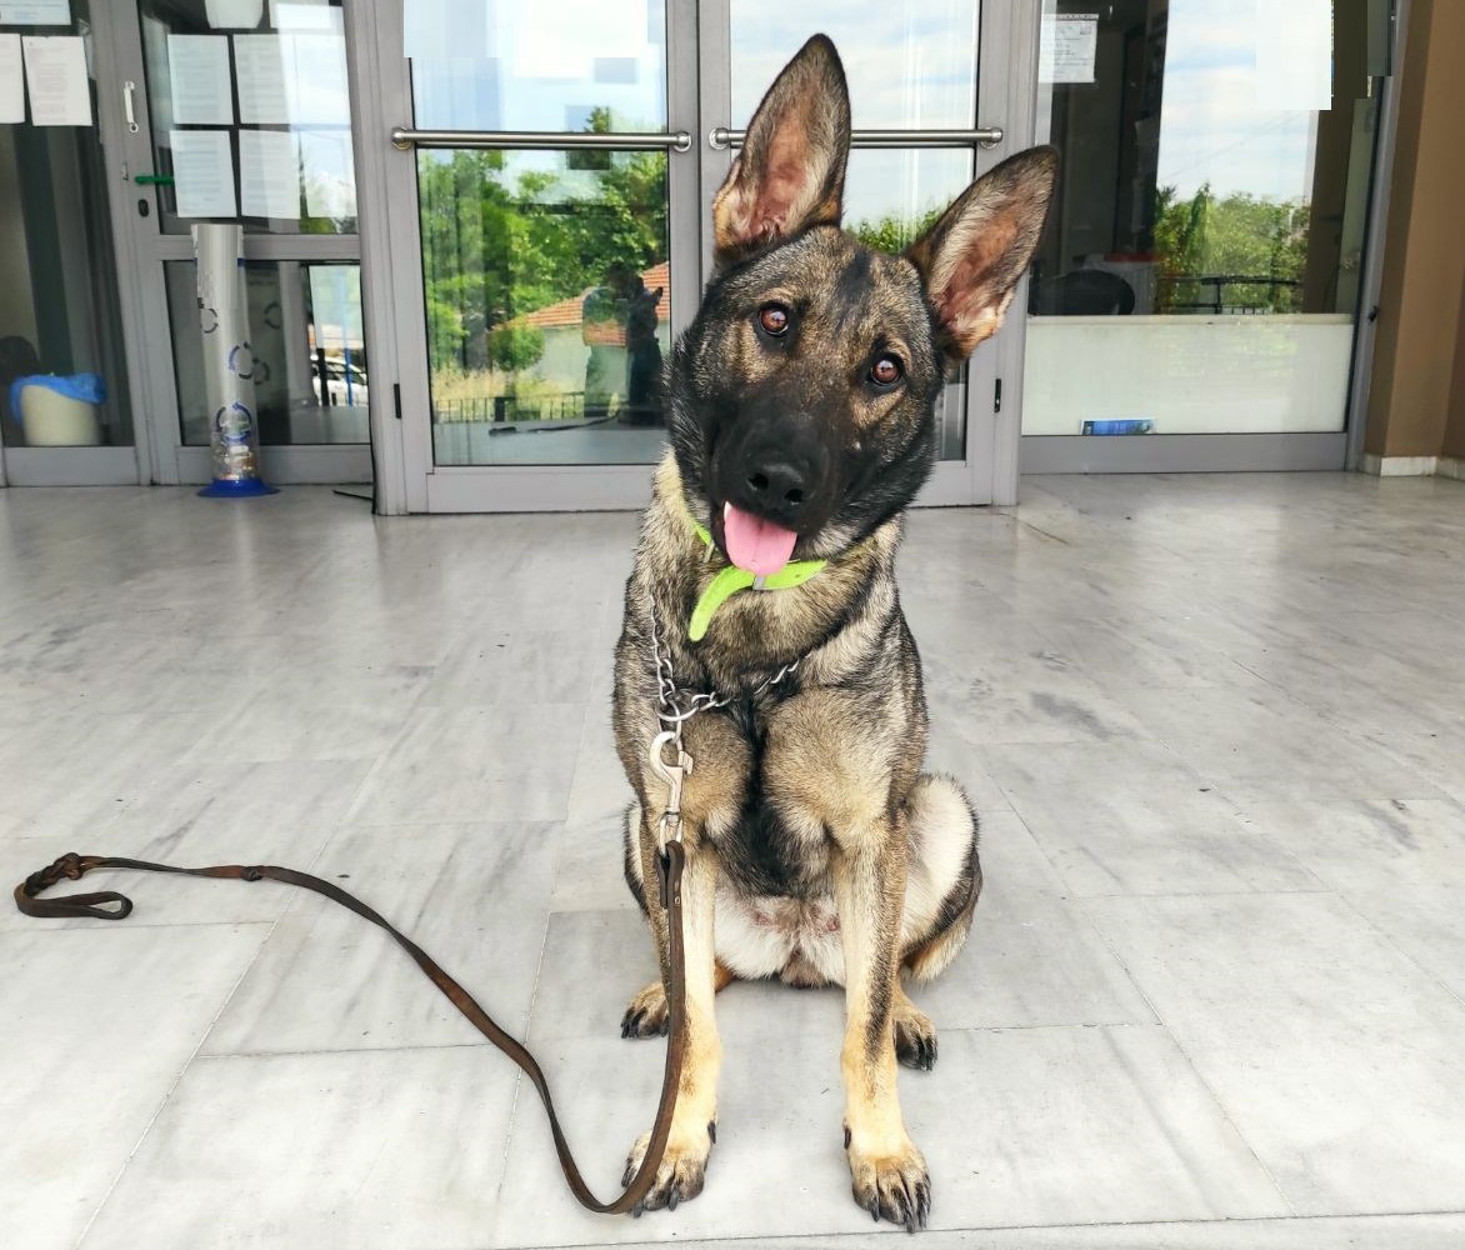 Σέρρες: Η σκυλίτσα Ρόξι ξετρύπωσε 200 γραμμάρια ηρωίνης και 3,3 γραμμάρια κοκαΐνης